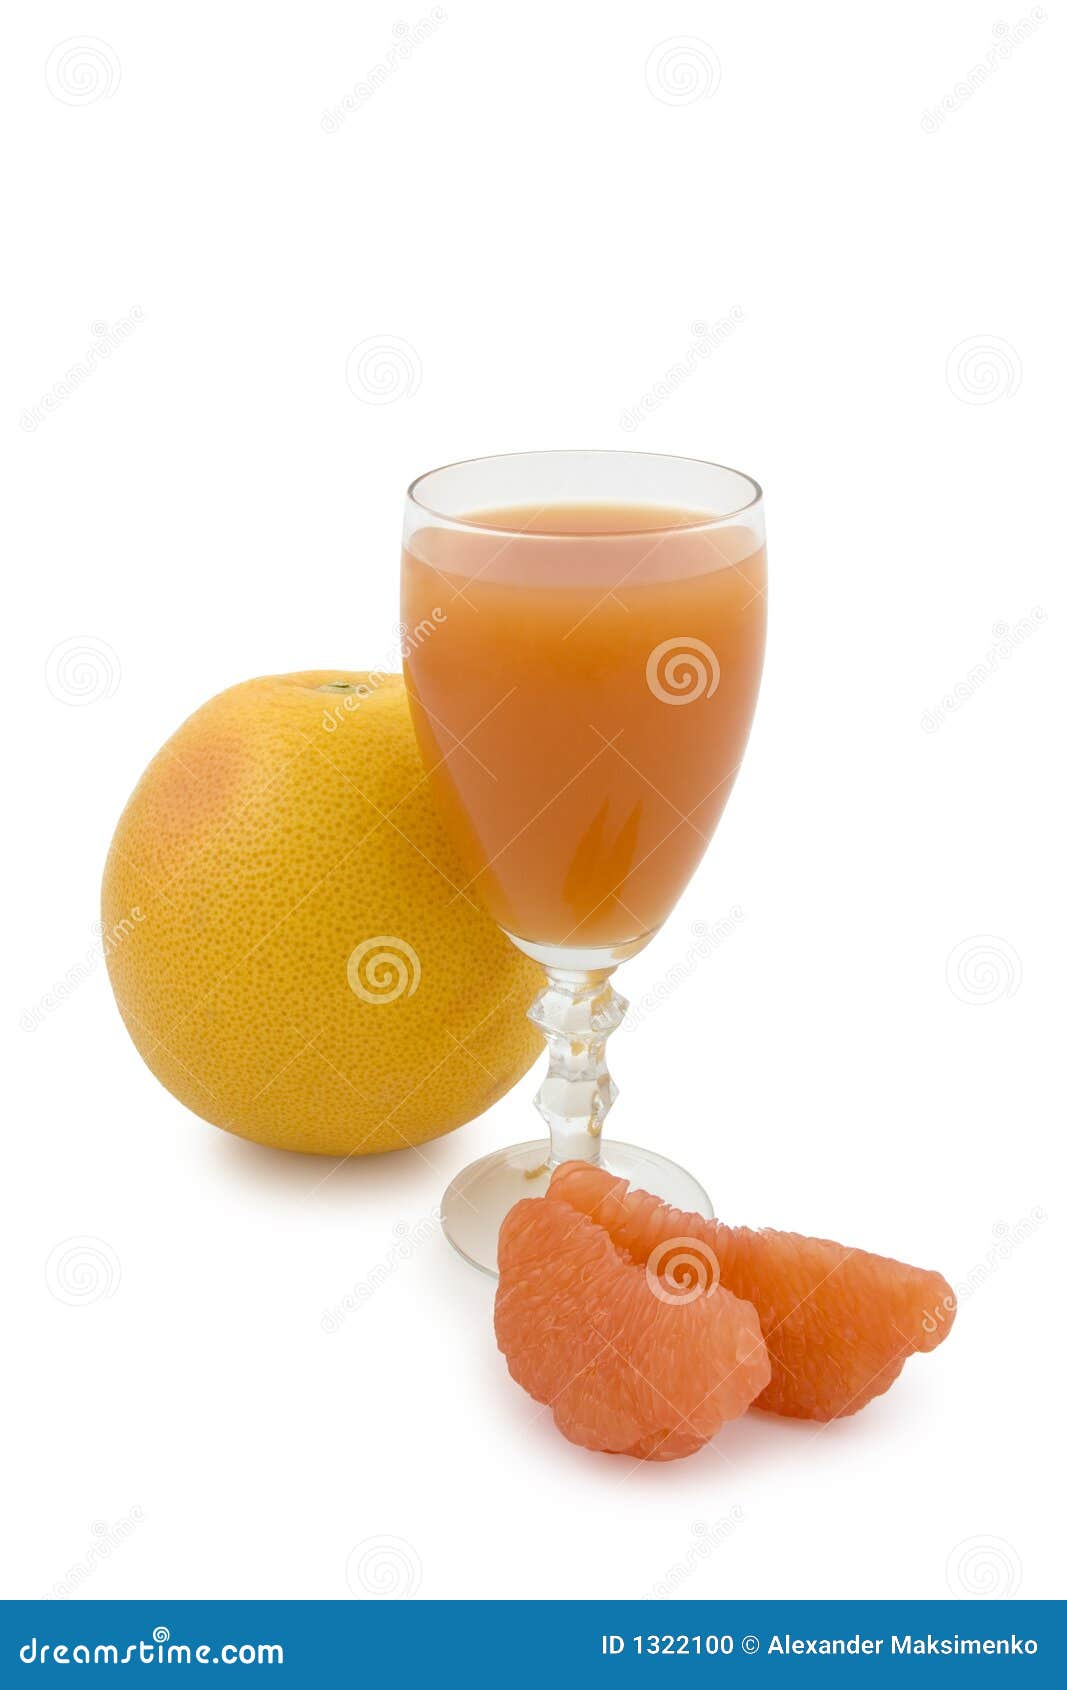 葡萄柚汁 库存图片. 图片 包括有 美食术, 柠檬酸, 点心, 汁液, 制动手, 玻璃, 果子, 营养, 维生素 - 50291799